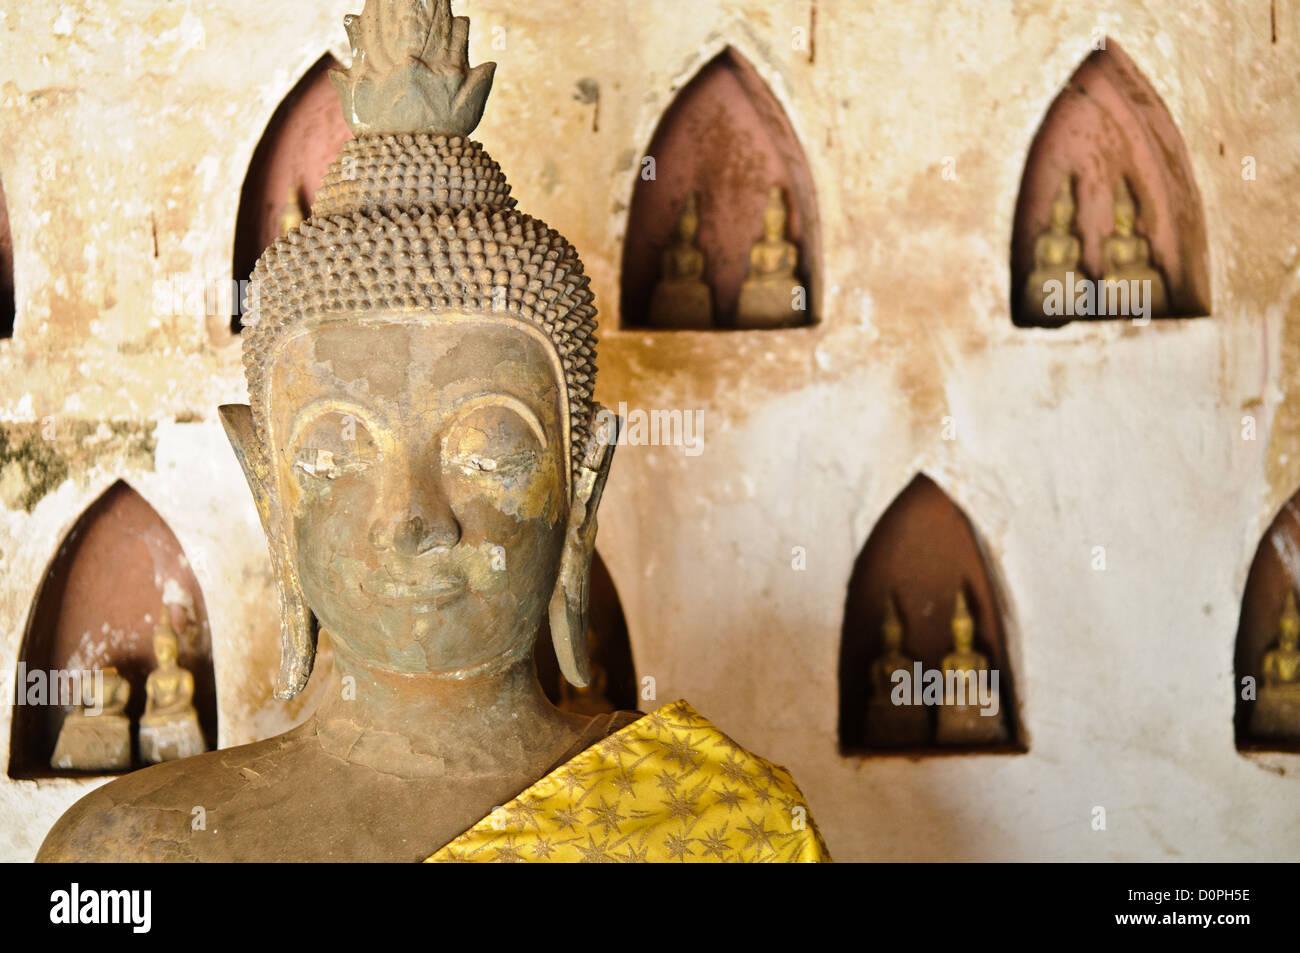 VIENTIANE, Laos - Parte di una collezione di circa 2000 ceramica e argento buddha sul display nei chiostri di Wat Si Saket in Vientiane, Laos. Costruito nel 1818, il tempio è di stile Siamese piuttosto che il tradizionale stile Lao. Ora è forse il più antico tempio ancora in piedi in Vientiane. Foto Stock